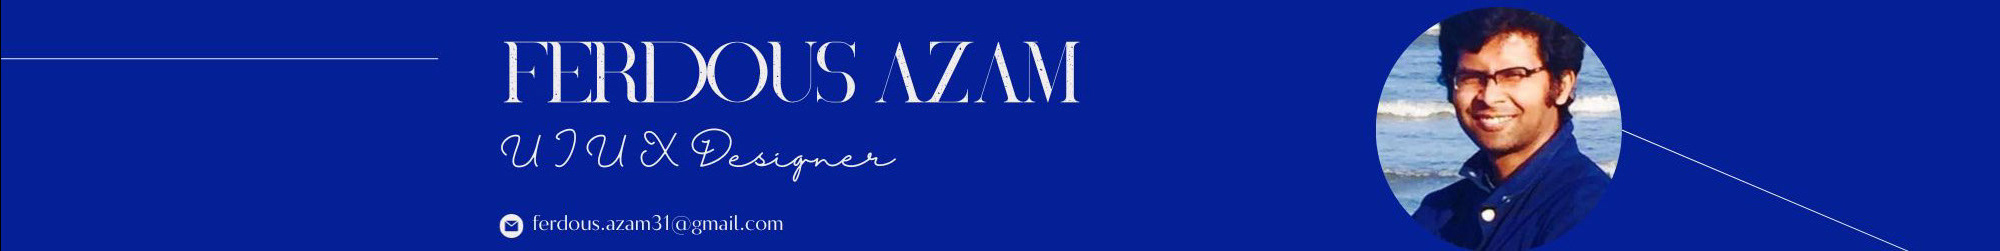 Ferdous Azam profil başlığı